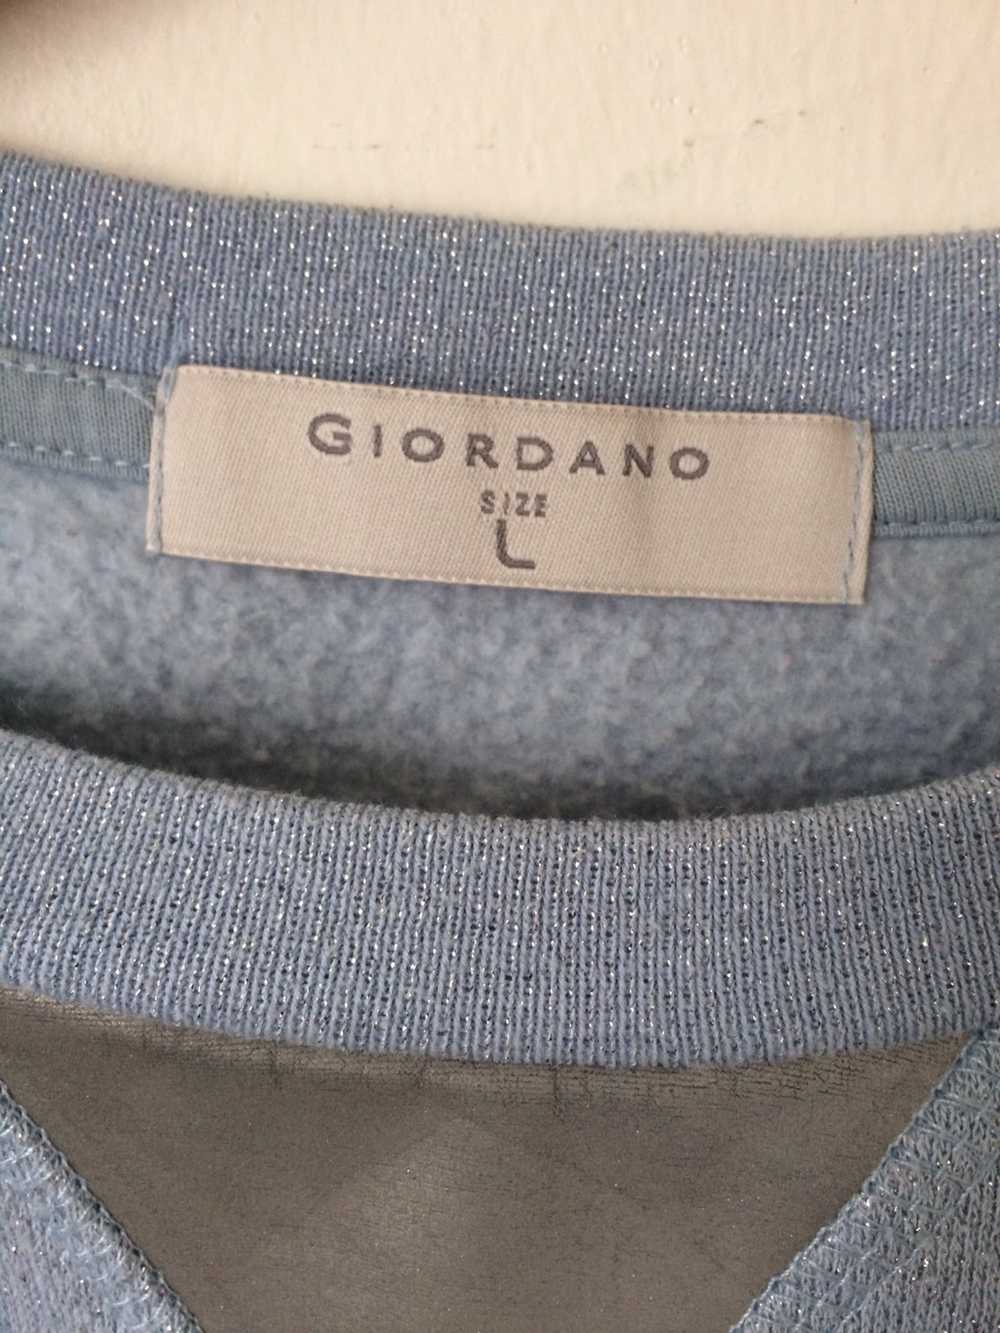 Giordano Giordarno Sweatshirt Size L 20"x25" - image 3